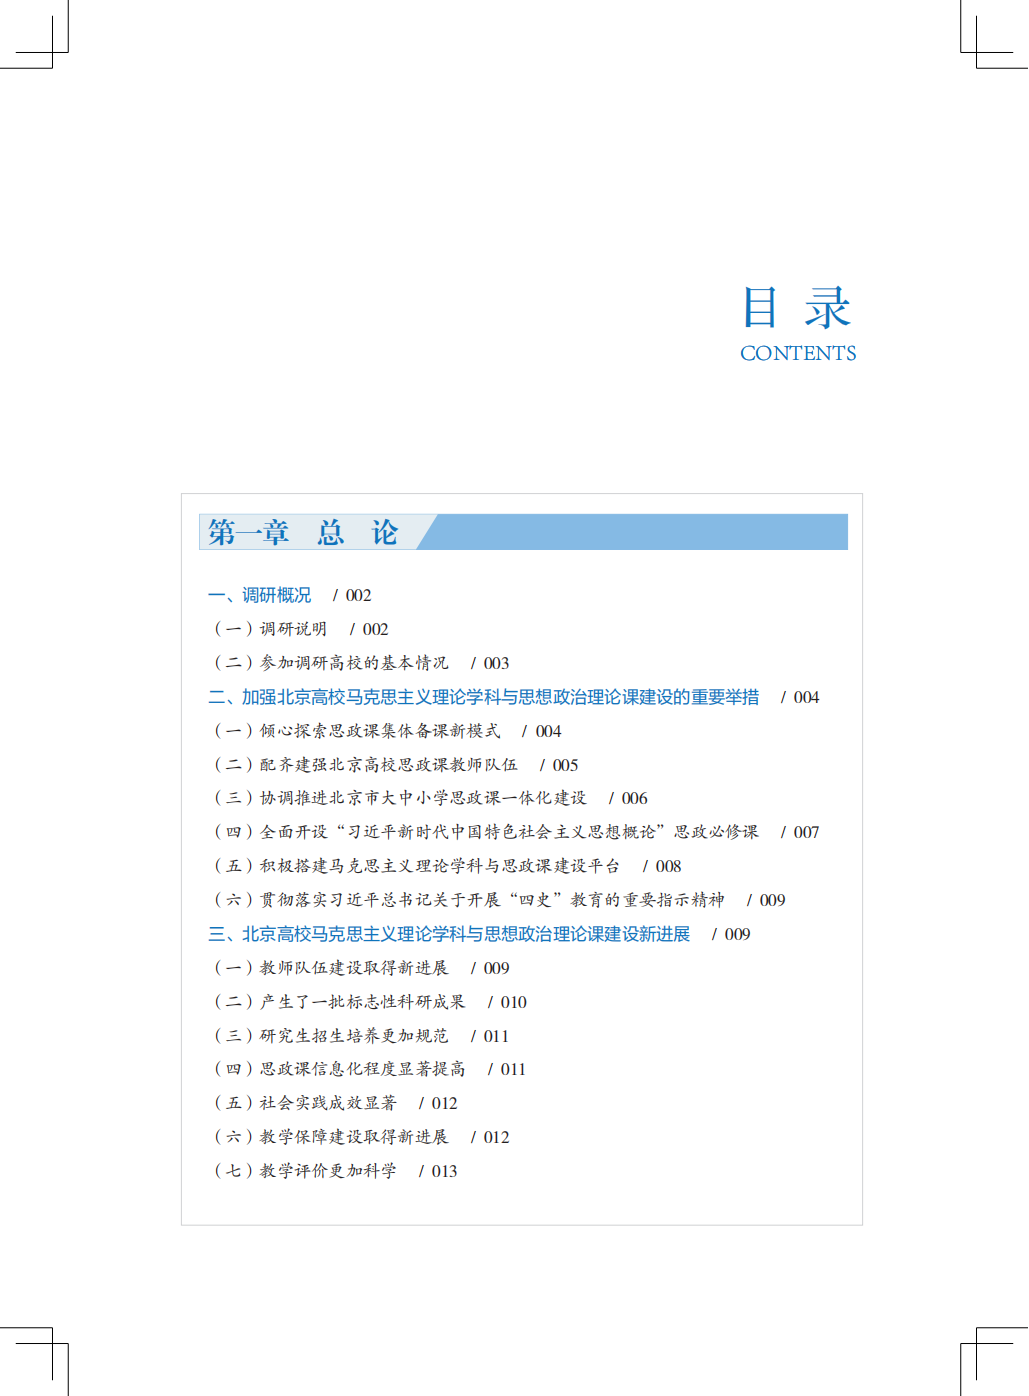 目录--北京市马学科发展报告（2020）_00.png